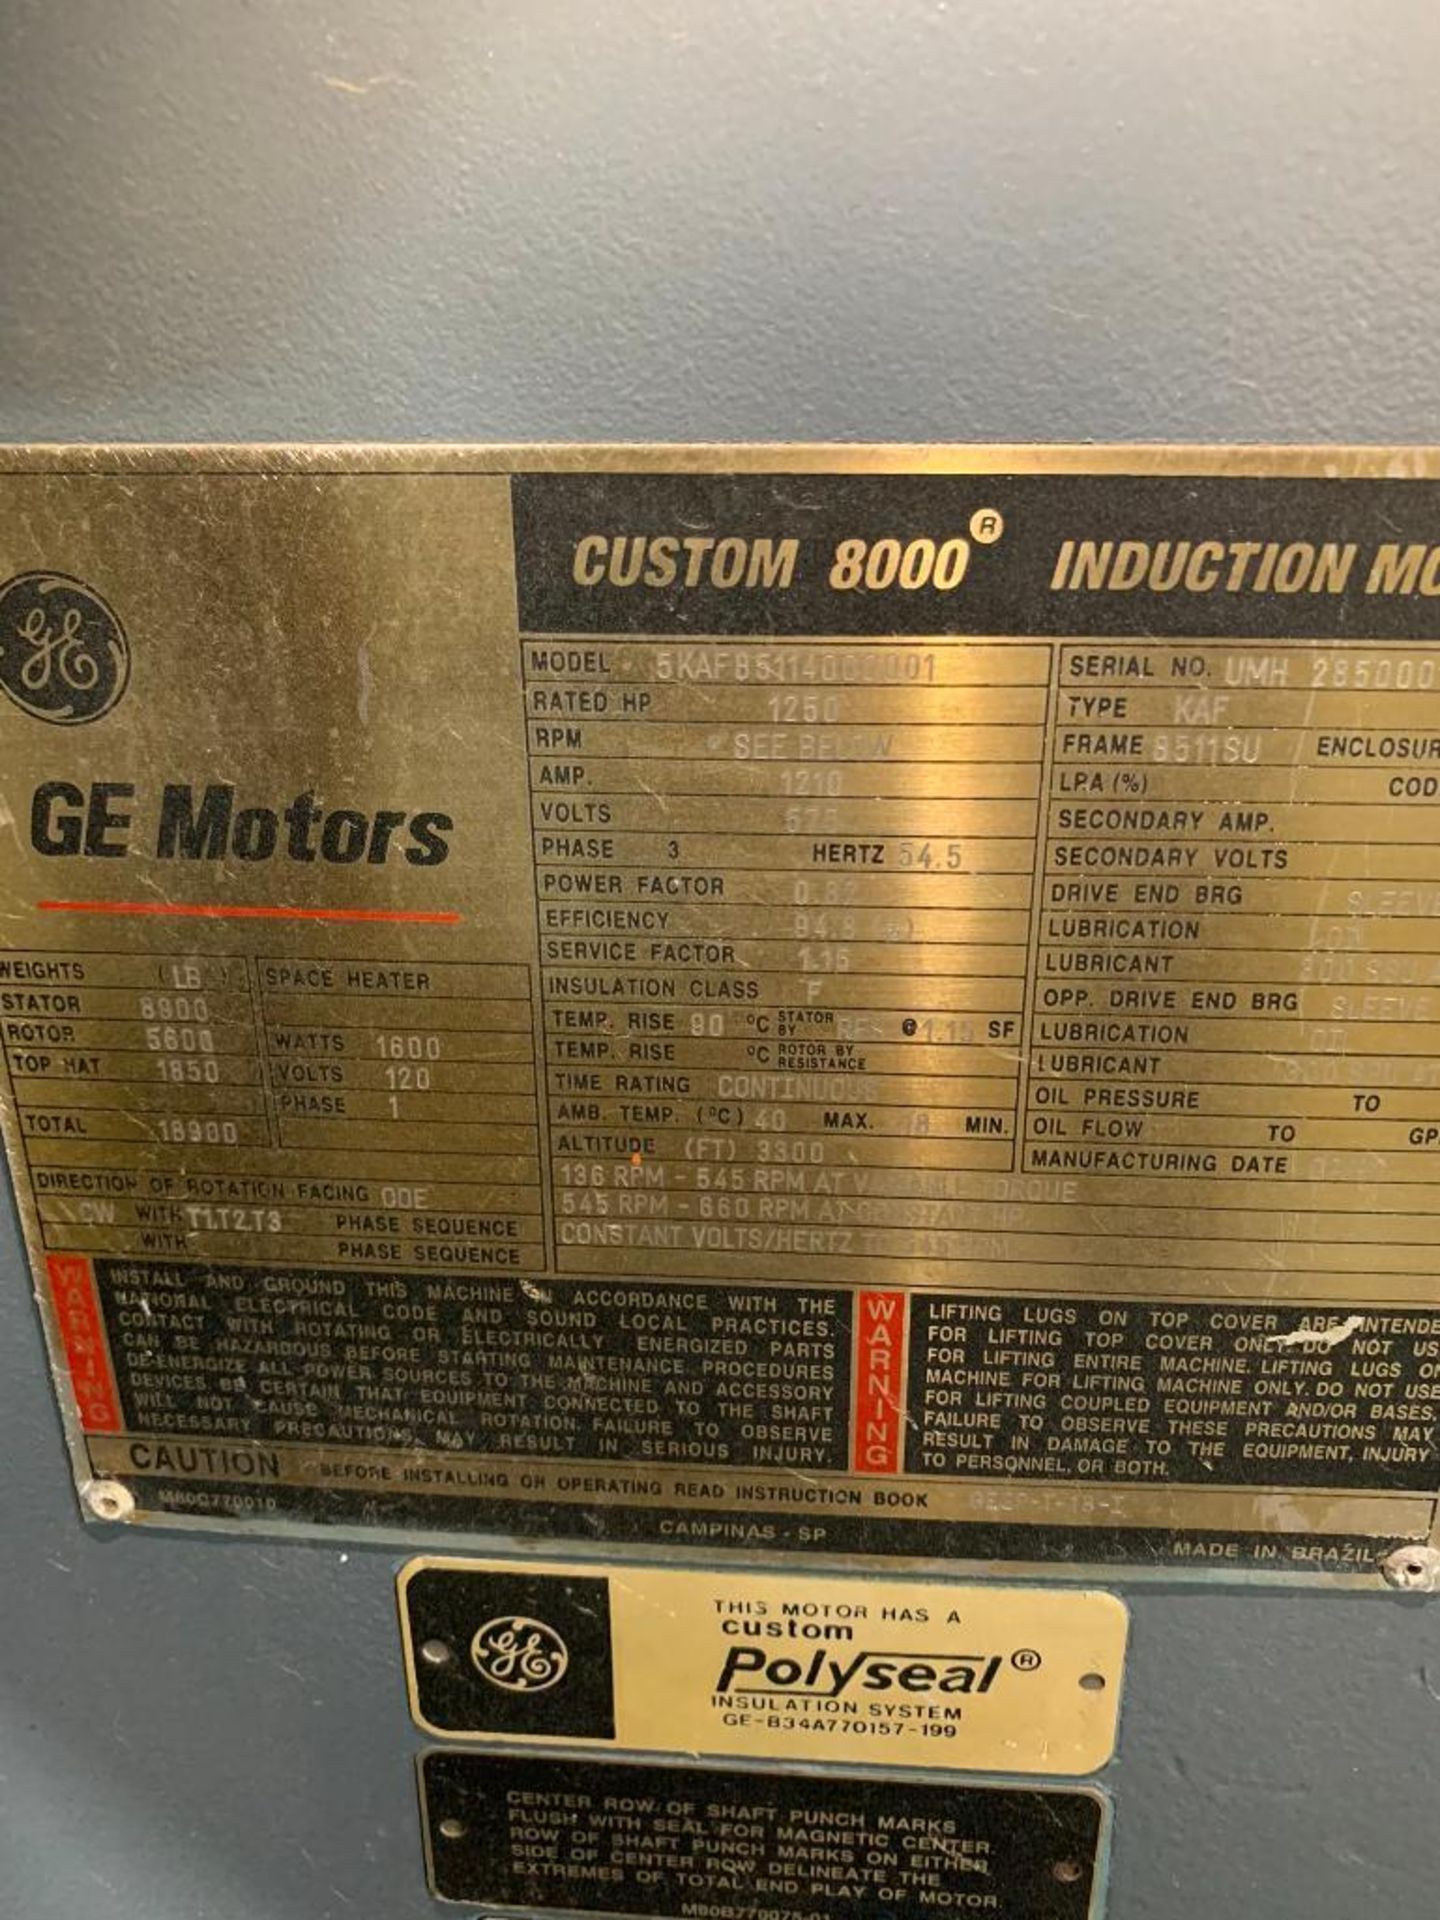 GE Custom 8000 1250-HP Induction Motor, Model 5KAF85114000001, 136-545 RPM, 545-660 RPM, 575 V, 3 PH - Image 5 of 5